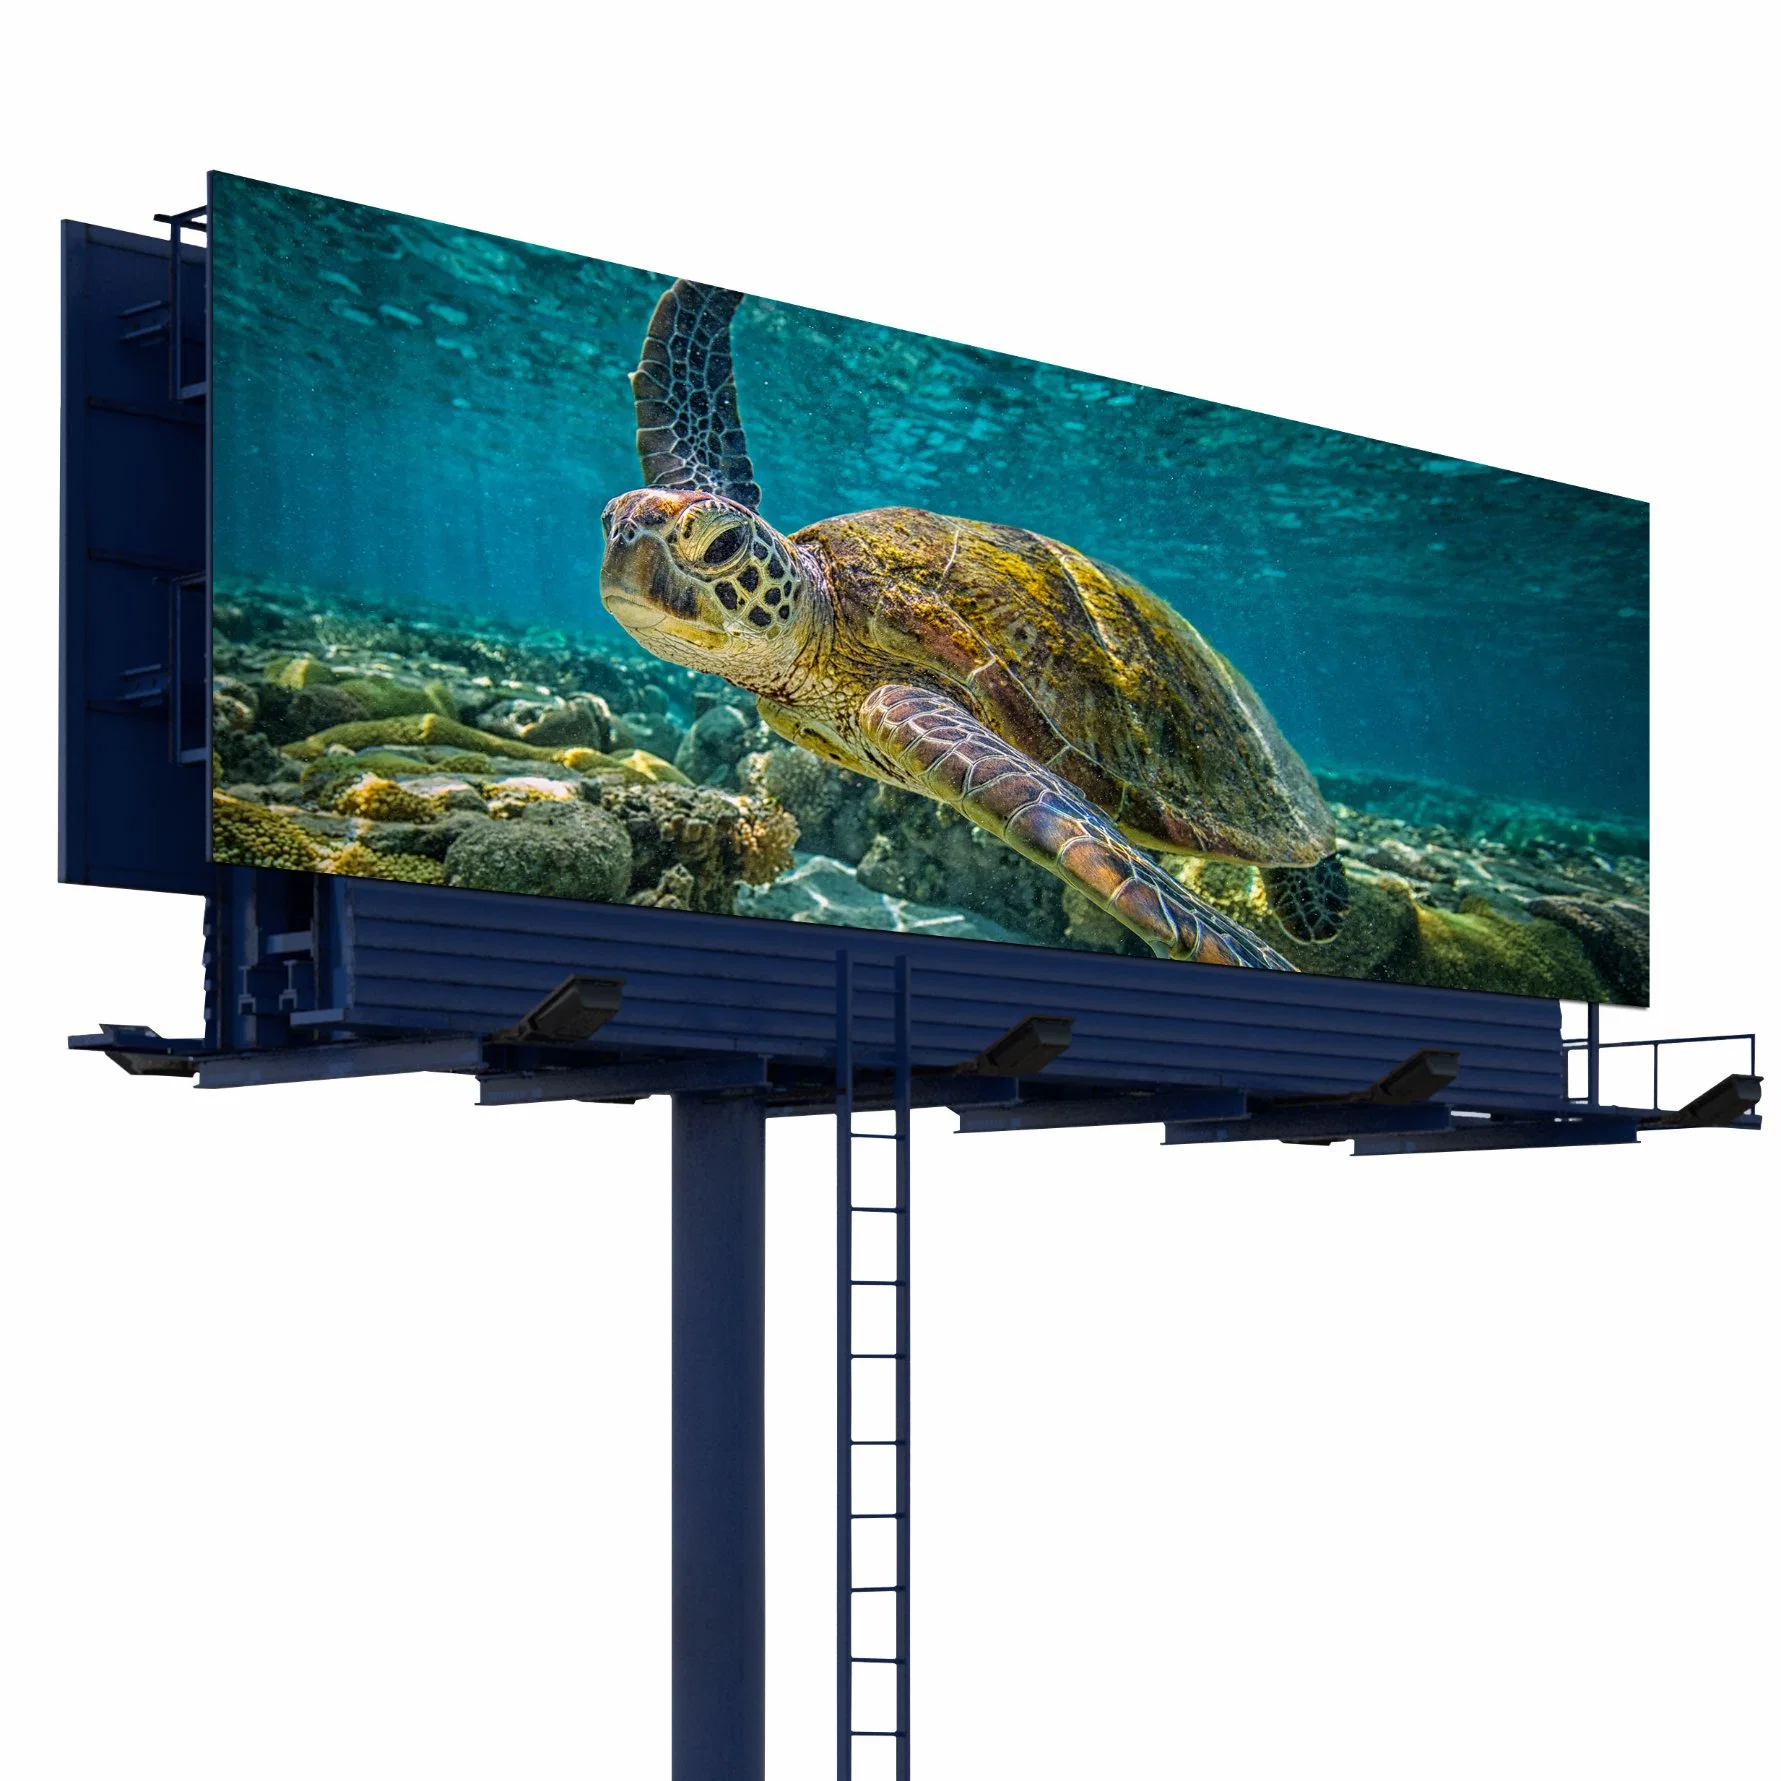 لوحة لوحات إعلانية رقمية عملاقة بألوان كاملة من نوع LED، لوحة عرض SMD Outdoor P5 P6 P8 P10 لإعلانات تأجير الفيديو حائط كبير Display (شاشة العرض